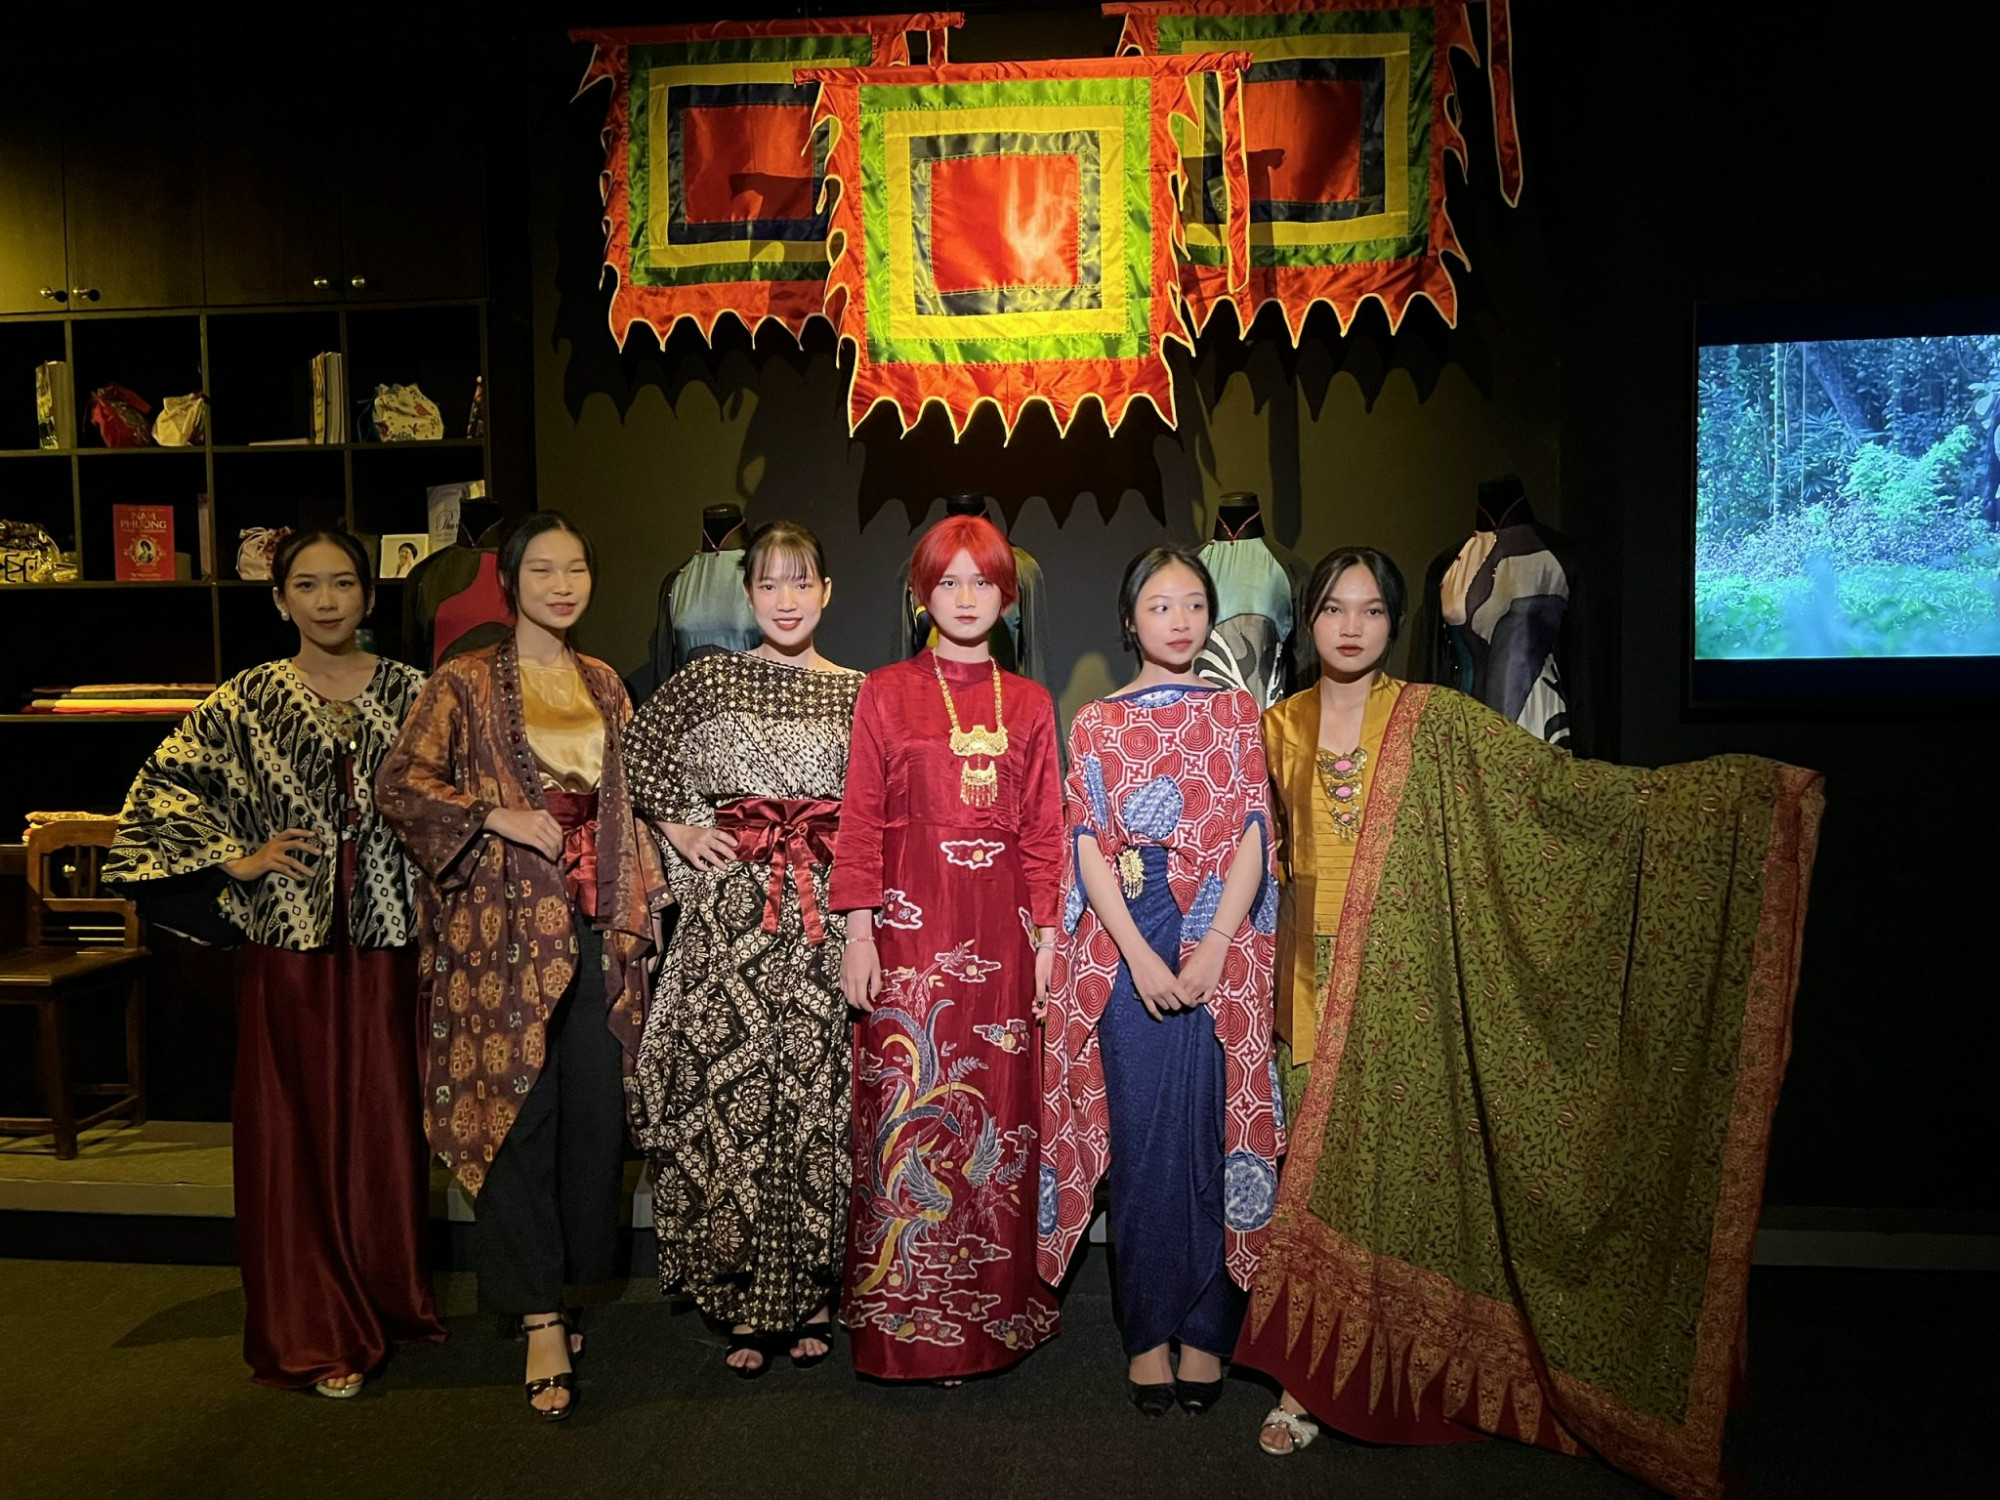 Trong sự kiện, phía Indonesia giới thiệu 2 chiếc áo dài làm bằng vải Batik. Trong đó, chiếc màu đỏ được dùng để người mẫu trình diễn. Các nghệ nhân mất 4 tuần để thực hiện mẫu áo dài này. Ngoài ra, phía Indonesia giới thiệu nhiều trang phục hiện đại làm bằng vải Batik.